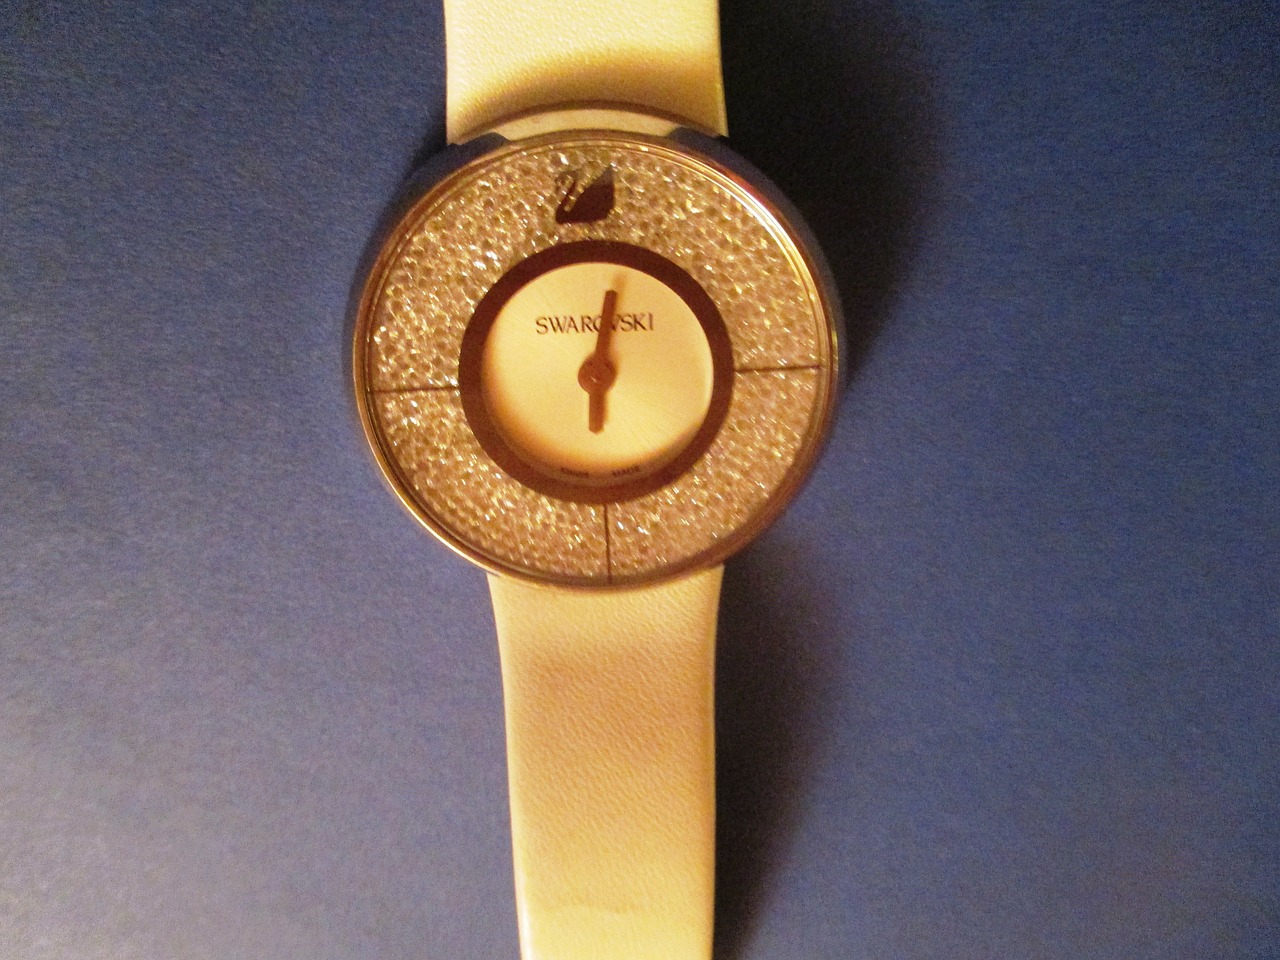 swarovski clock wrist watch free photo